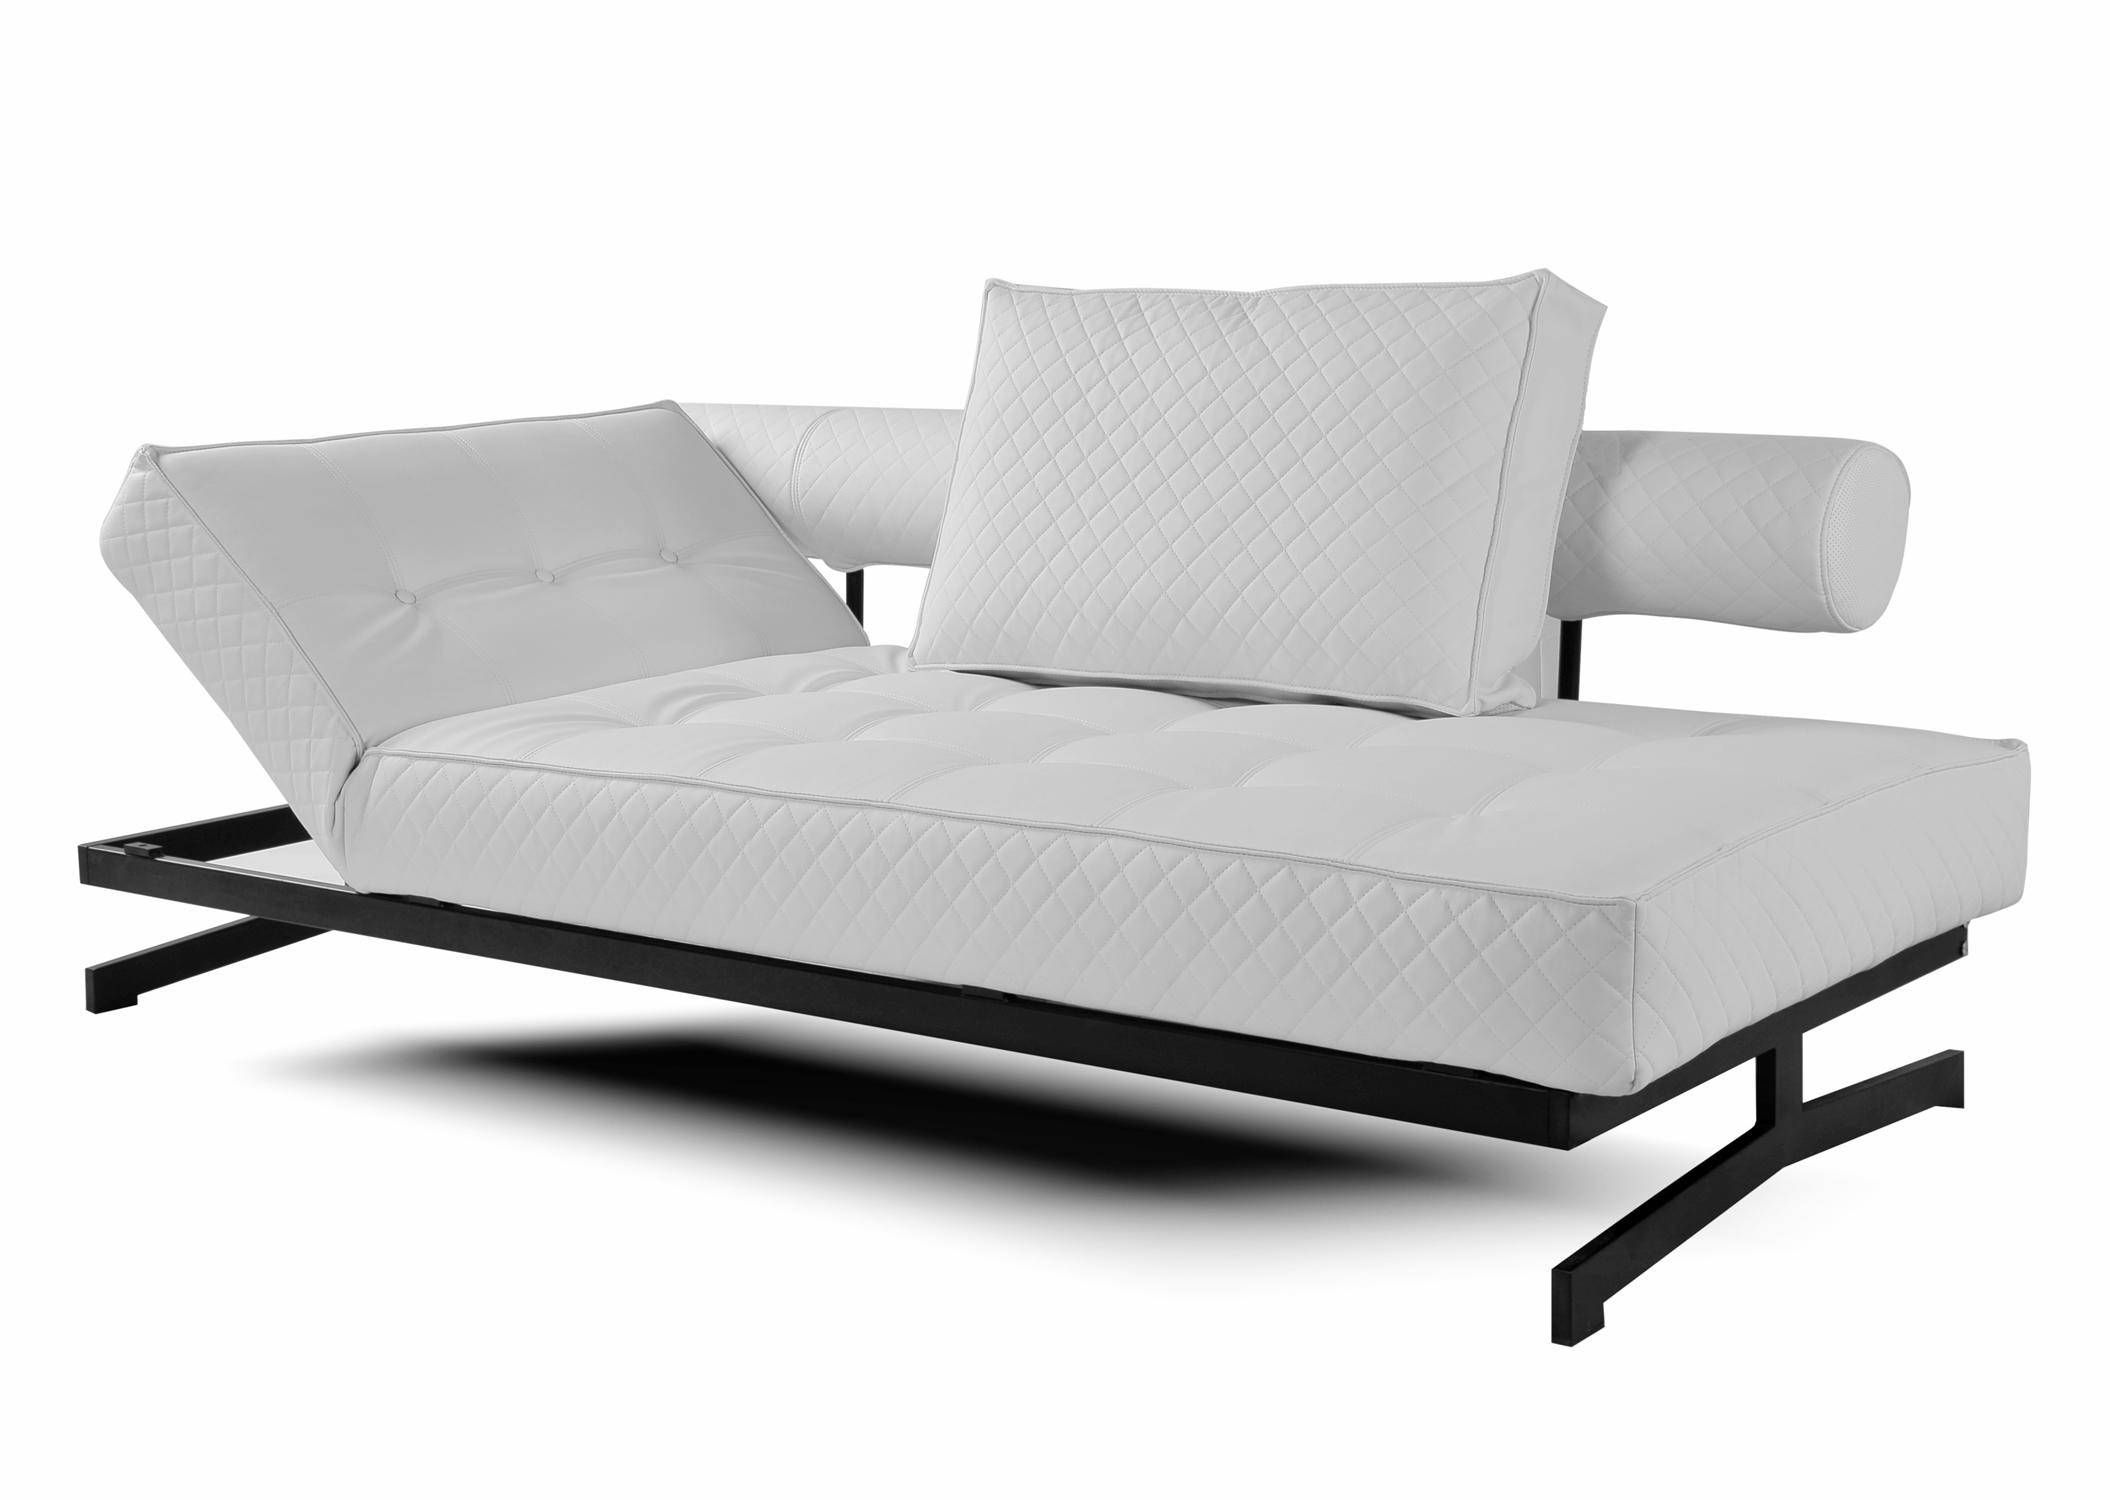 milan euro lounger sofa bed convertible